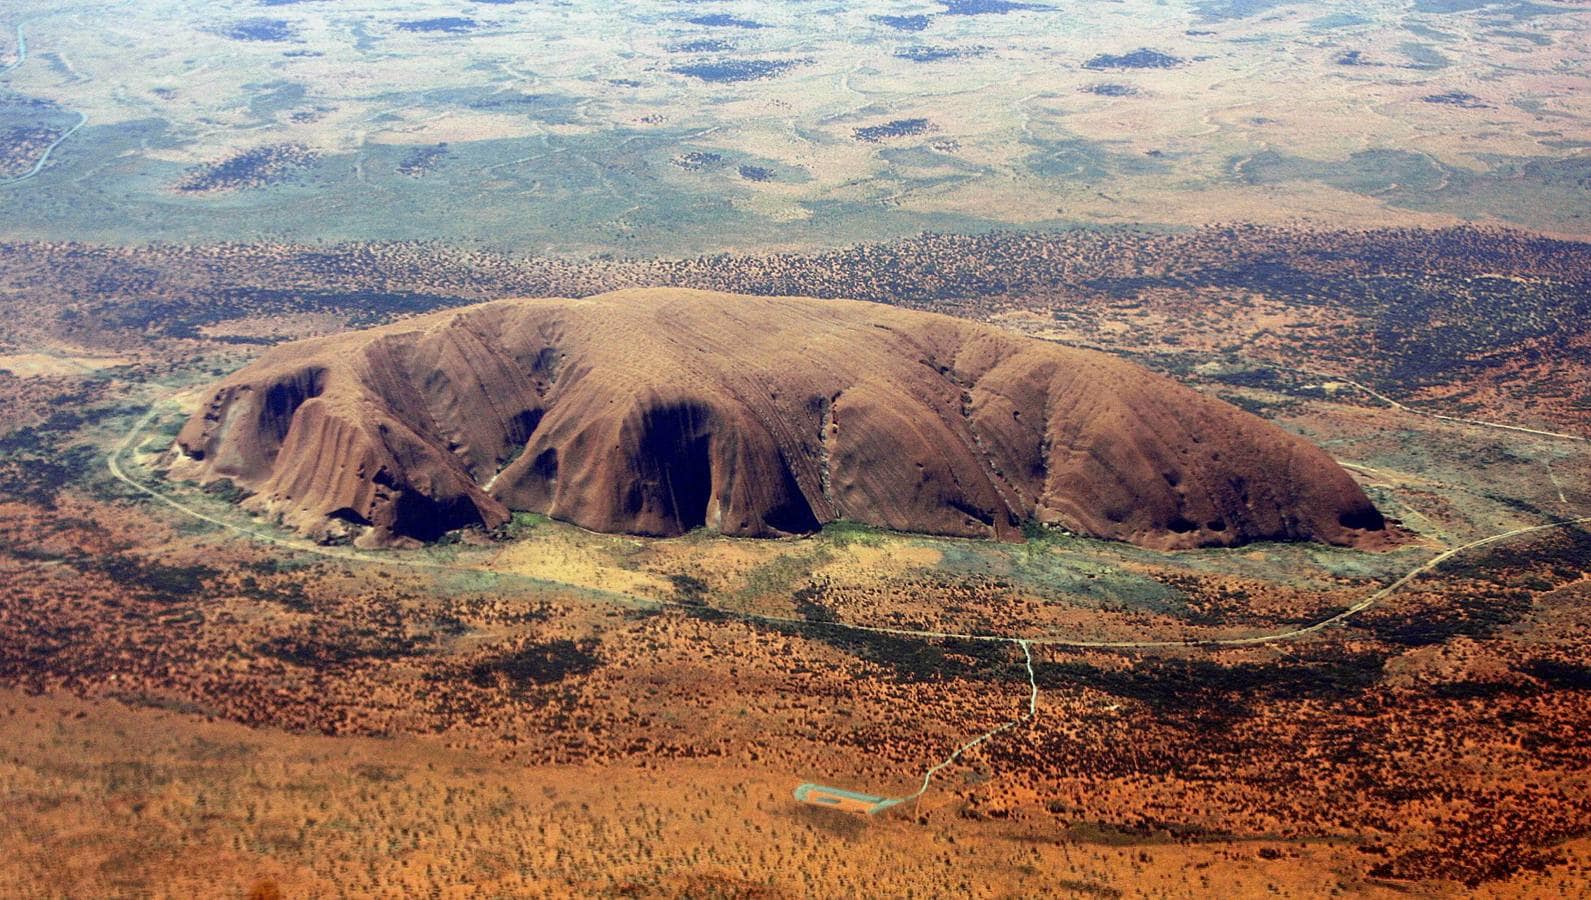 Monte Urulu. También llamado Ayers Rock, es una formación rocosa compuesta por arenisca que se encuentra en el centro de Australia. Es un lugar sagrado para los aborígenes australianos y desde 1987 es Patrimonio de la Humanidad. También es conocida como el ombligo del mundo. A pesar de ser uno de los iconos nacionales del país y el lugar más sagrado para la cultura de los Anangu (tribu aborigen de los alrededores de Uluru) la ascensión a su cima está permitida. La superficie del monolito cambia de color según la inclinación de los rayos solares, tanto a lo largo del día como en las diferentes estaciones del año.